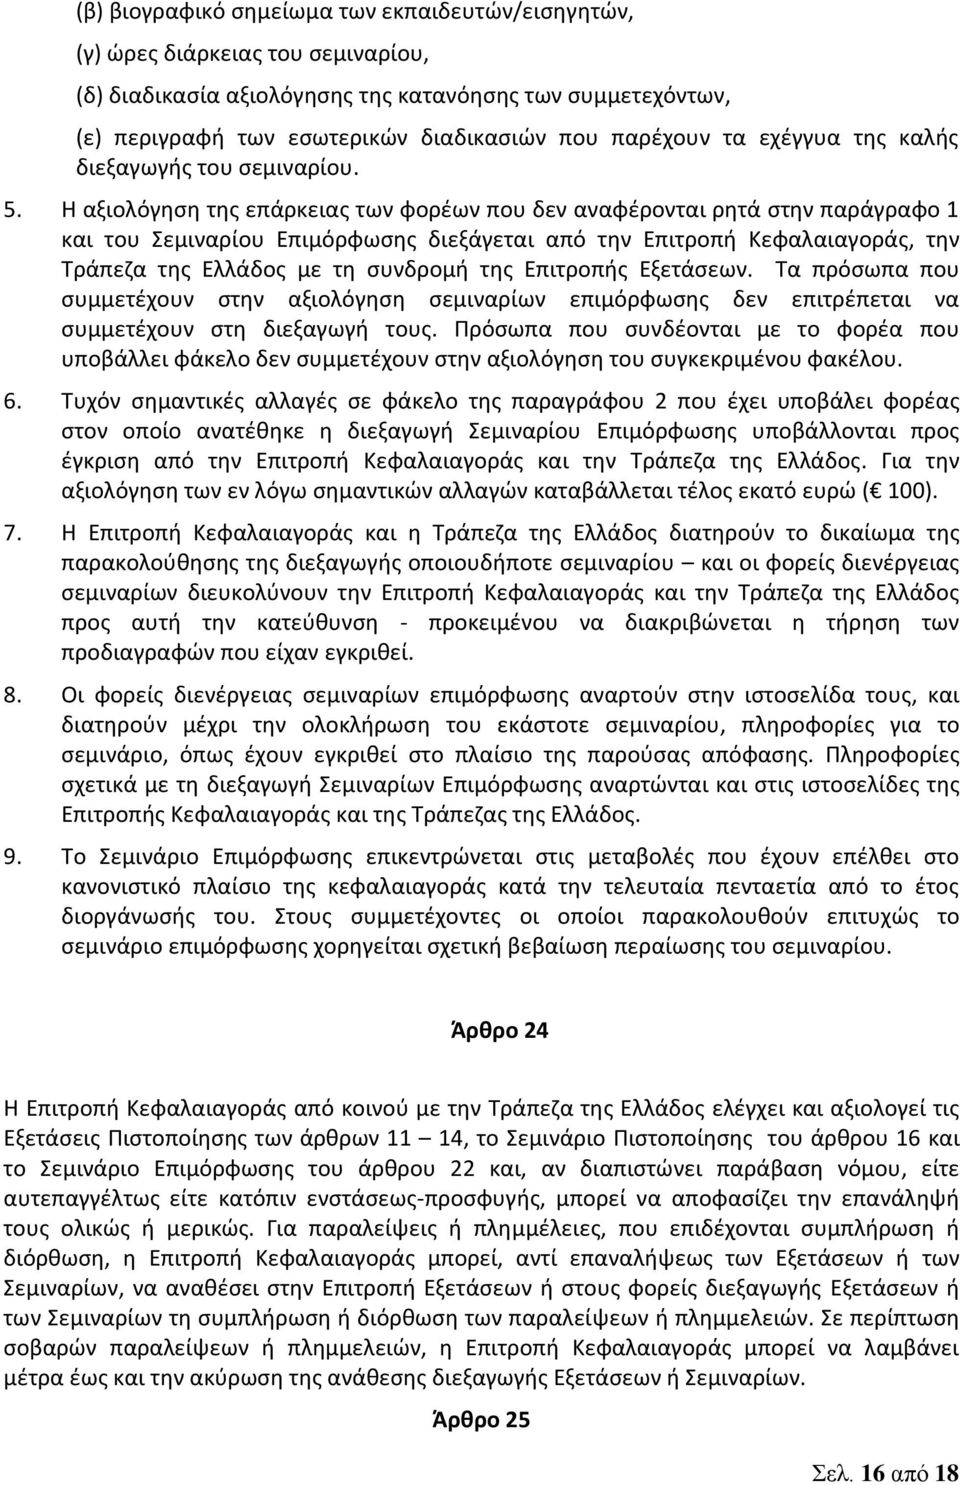 Η αξιολόγηση της επάρκειας των φορέων που δεν αναφέρονται ρητά στην παράγραφο 1 και του Σεμιναρίου Επιμόρφωσης διεξάγεται από την Επιτροπή Κεφαλαιαγοράς, την Τράπεζα της Ελλάδος με τη συνδρομή της